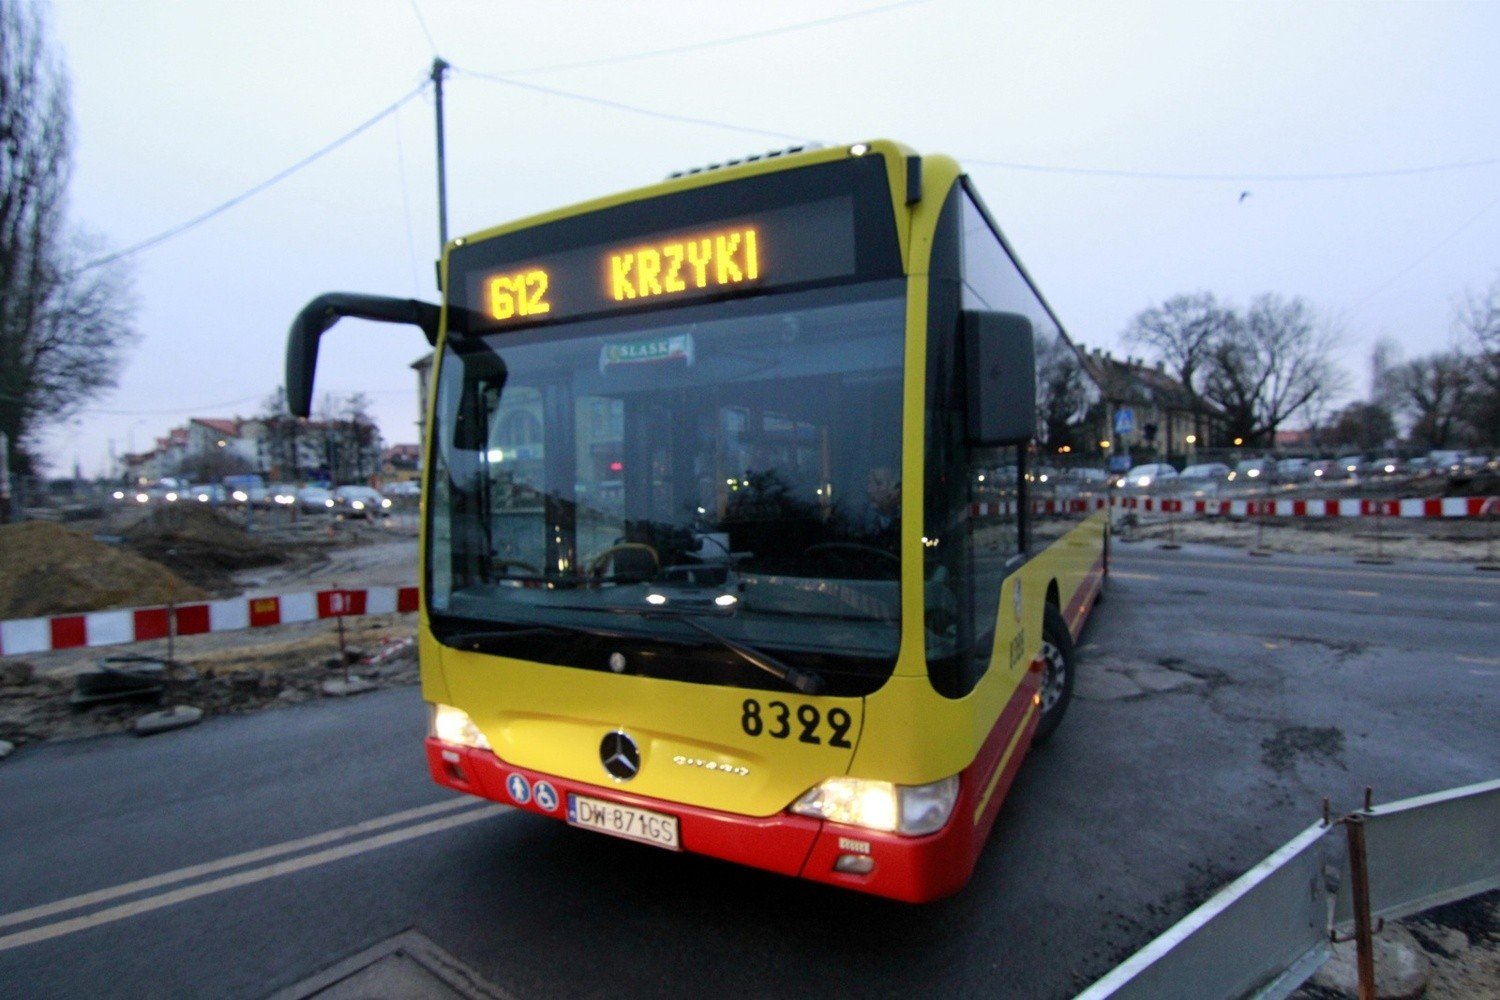 Autobus miejski odjeżdża bez wyświetlonego numeru | Gazeta Wrocławska